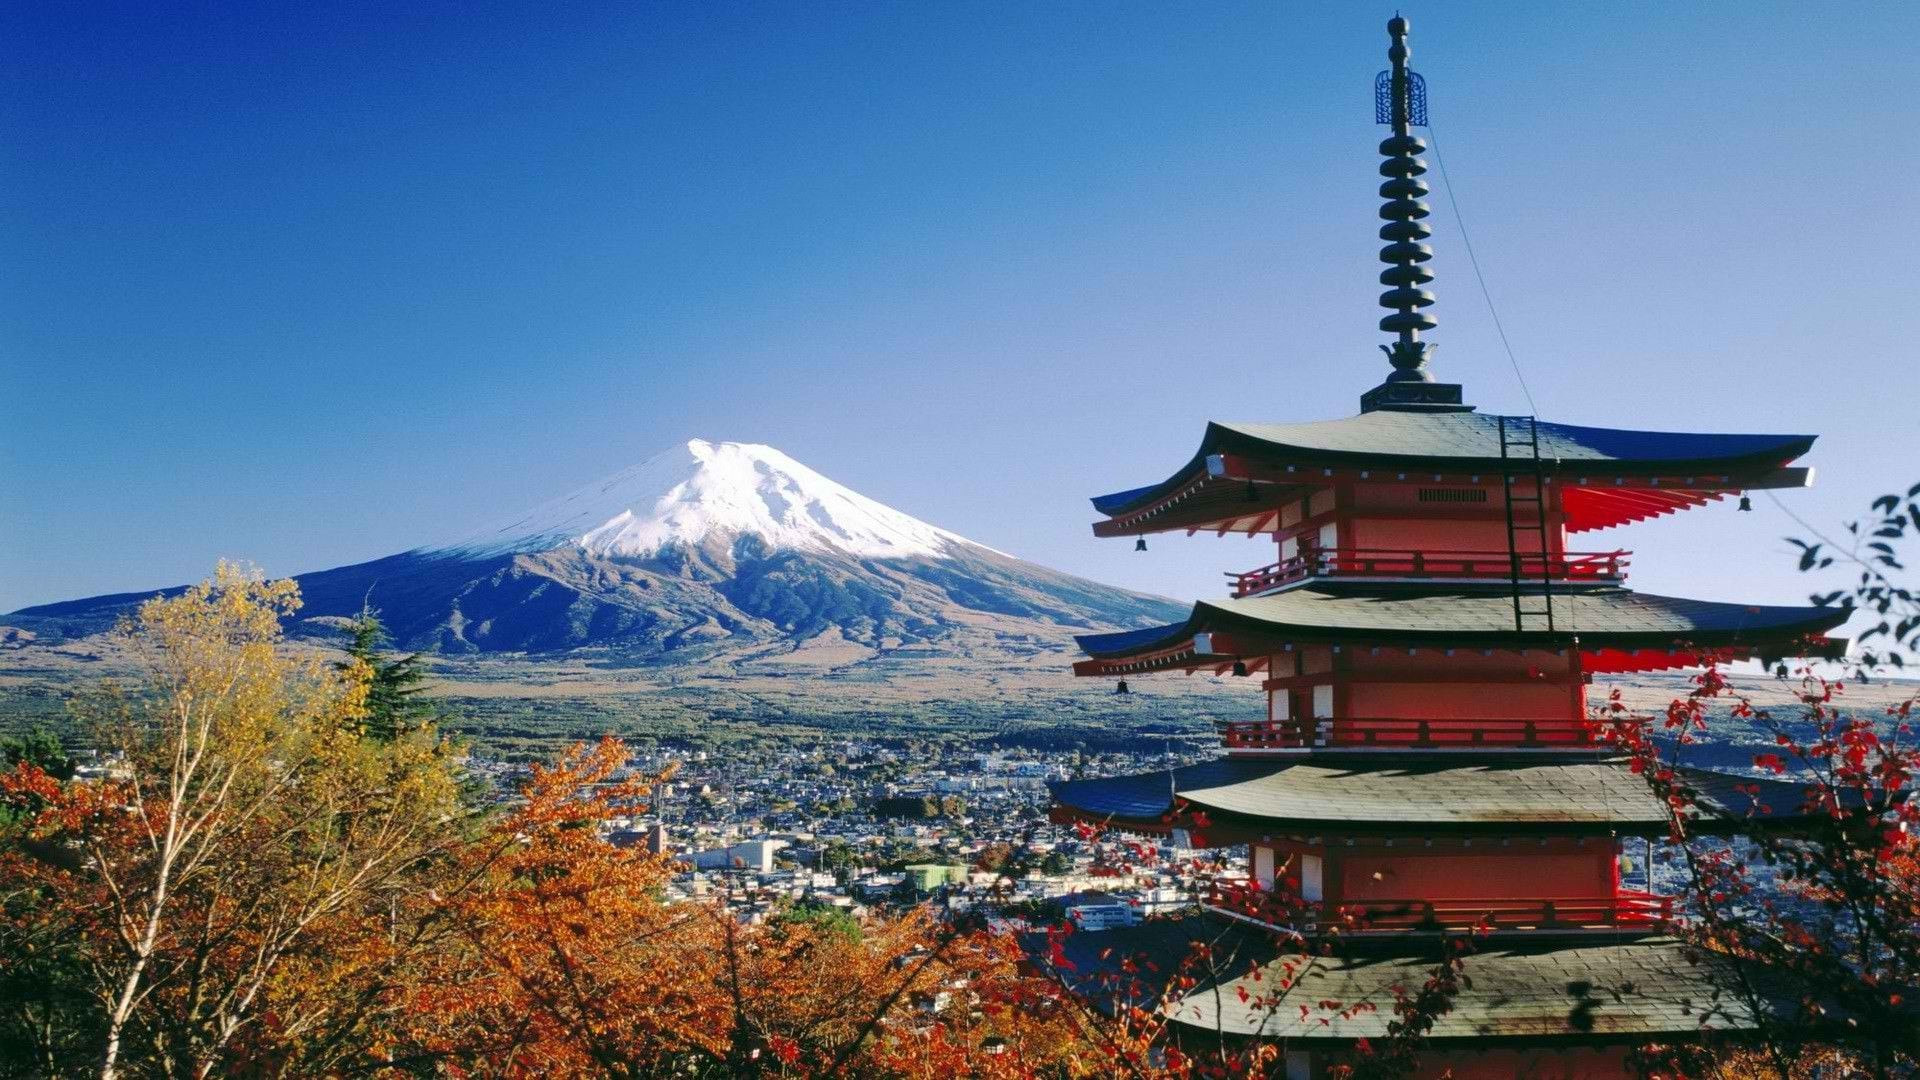 Mt Fuji Images  Free Download on Freepik